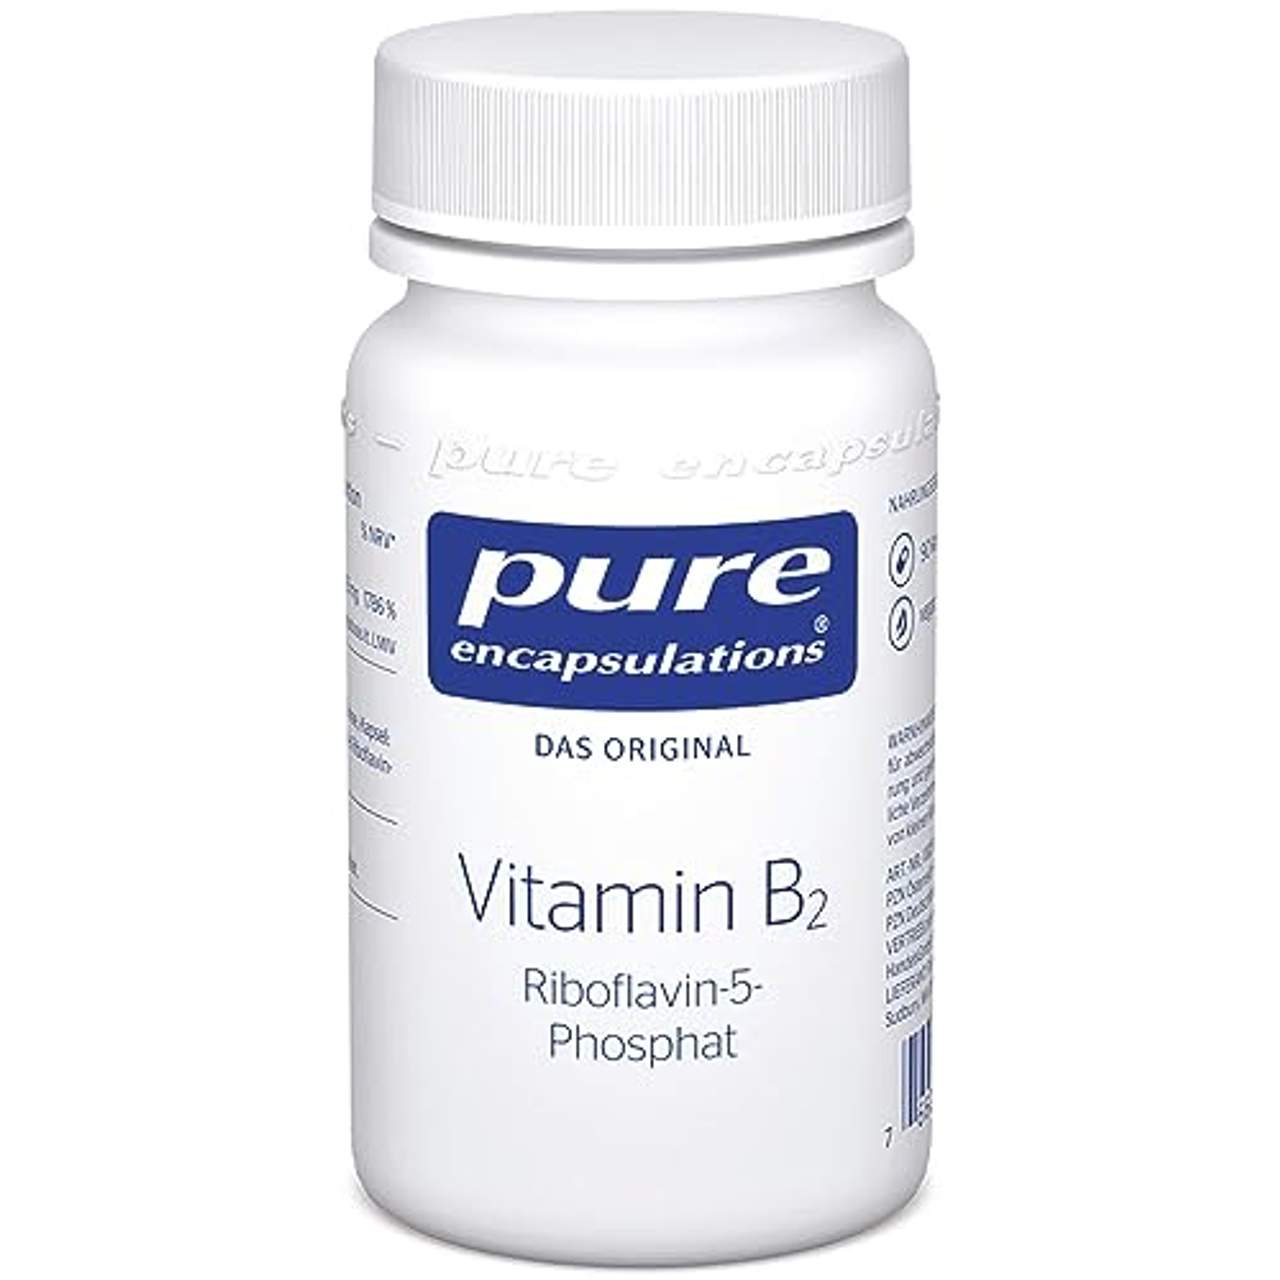 pro medico GmbH Pure Vitamin B2